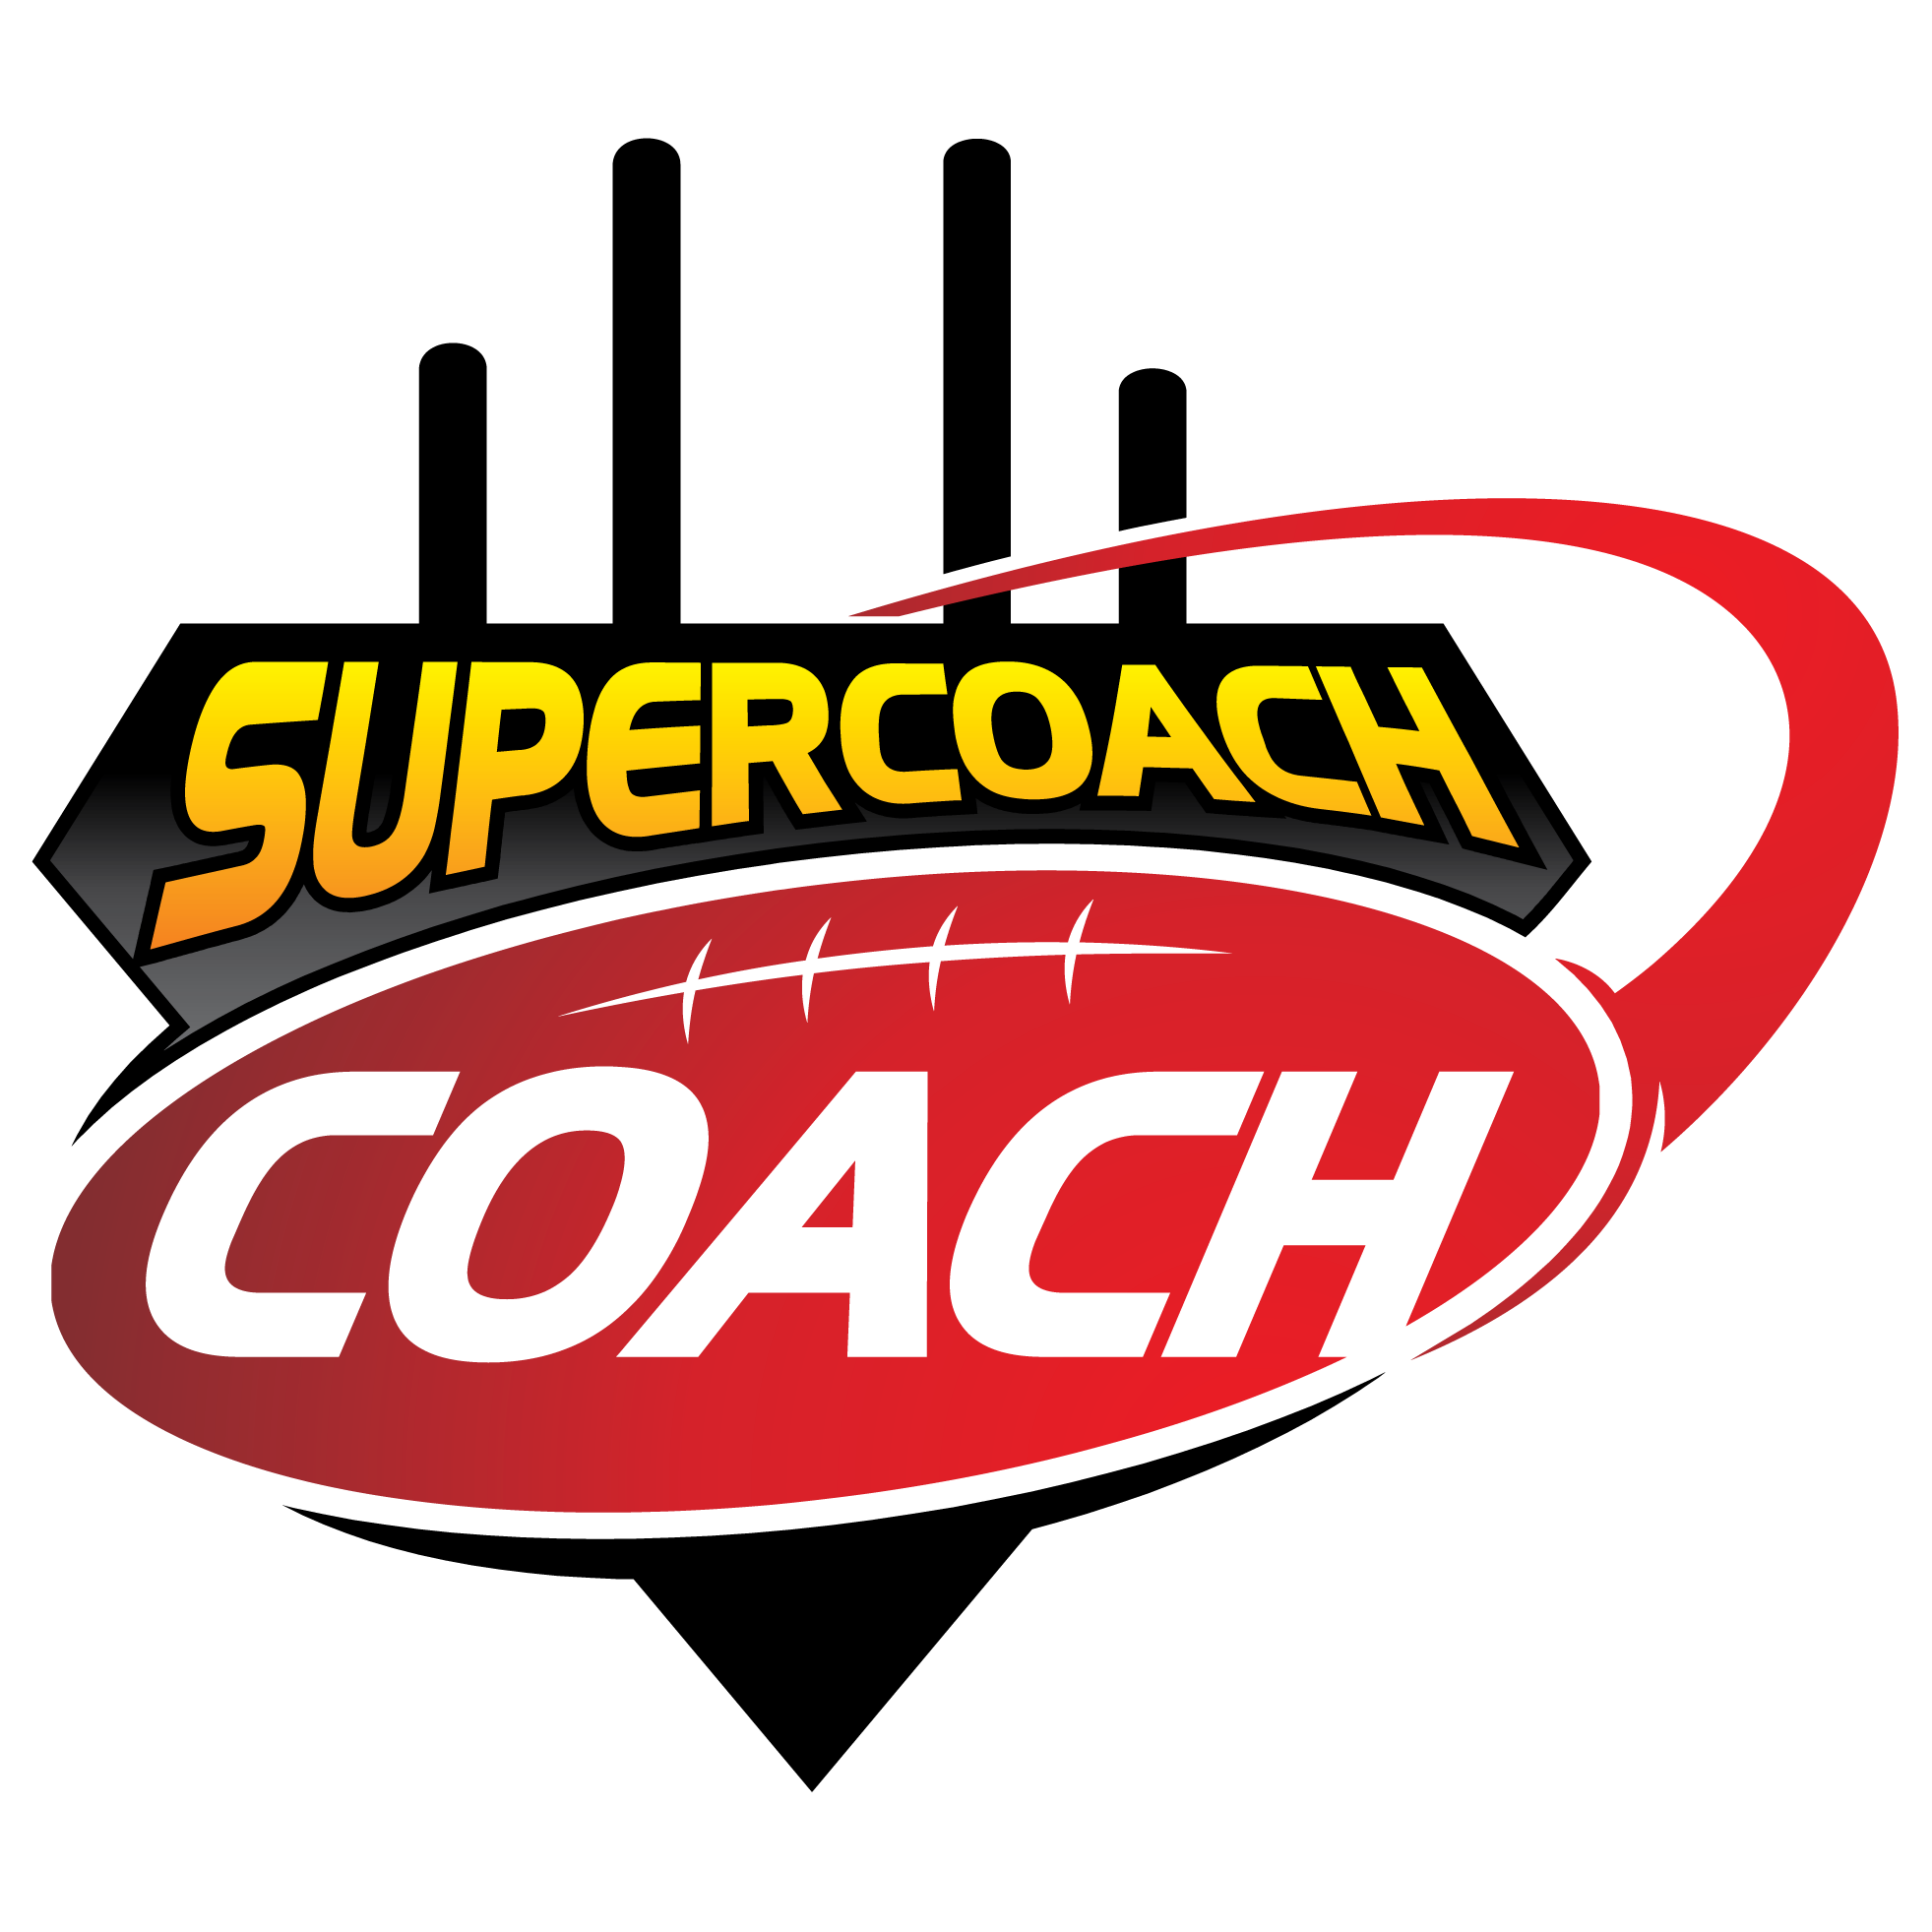 SuperCoach Coach Forum